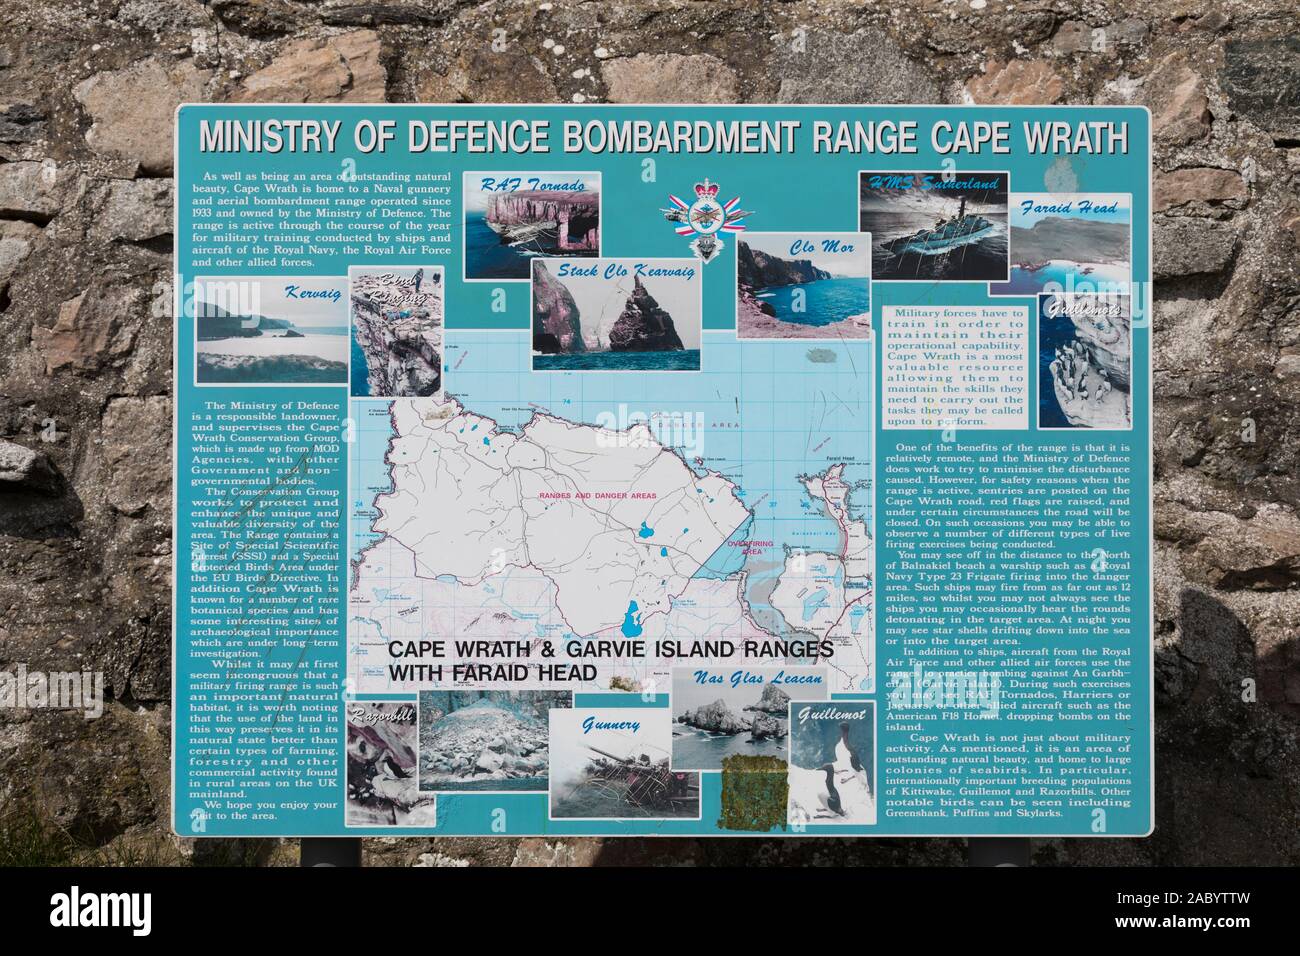 Touristische Informationen Bekanntmachung mit einer Beschreibung der Geschichte und Aktivitäten rund um das Ministerium der Verteidigung Bombardierung Strecke am Cape Wrath Stockfoto